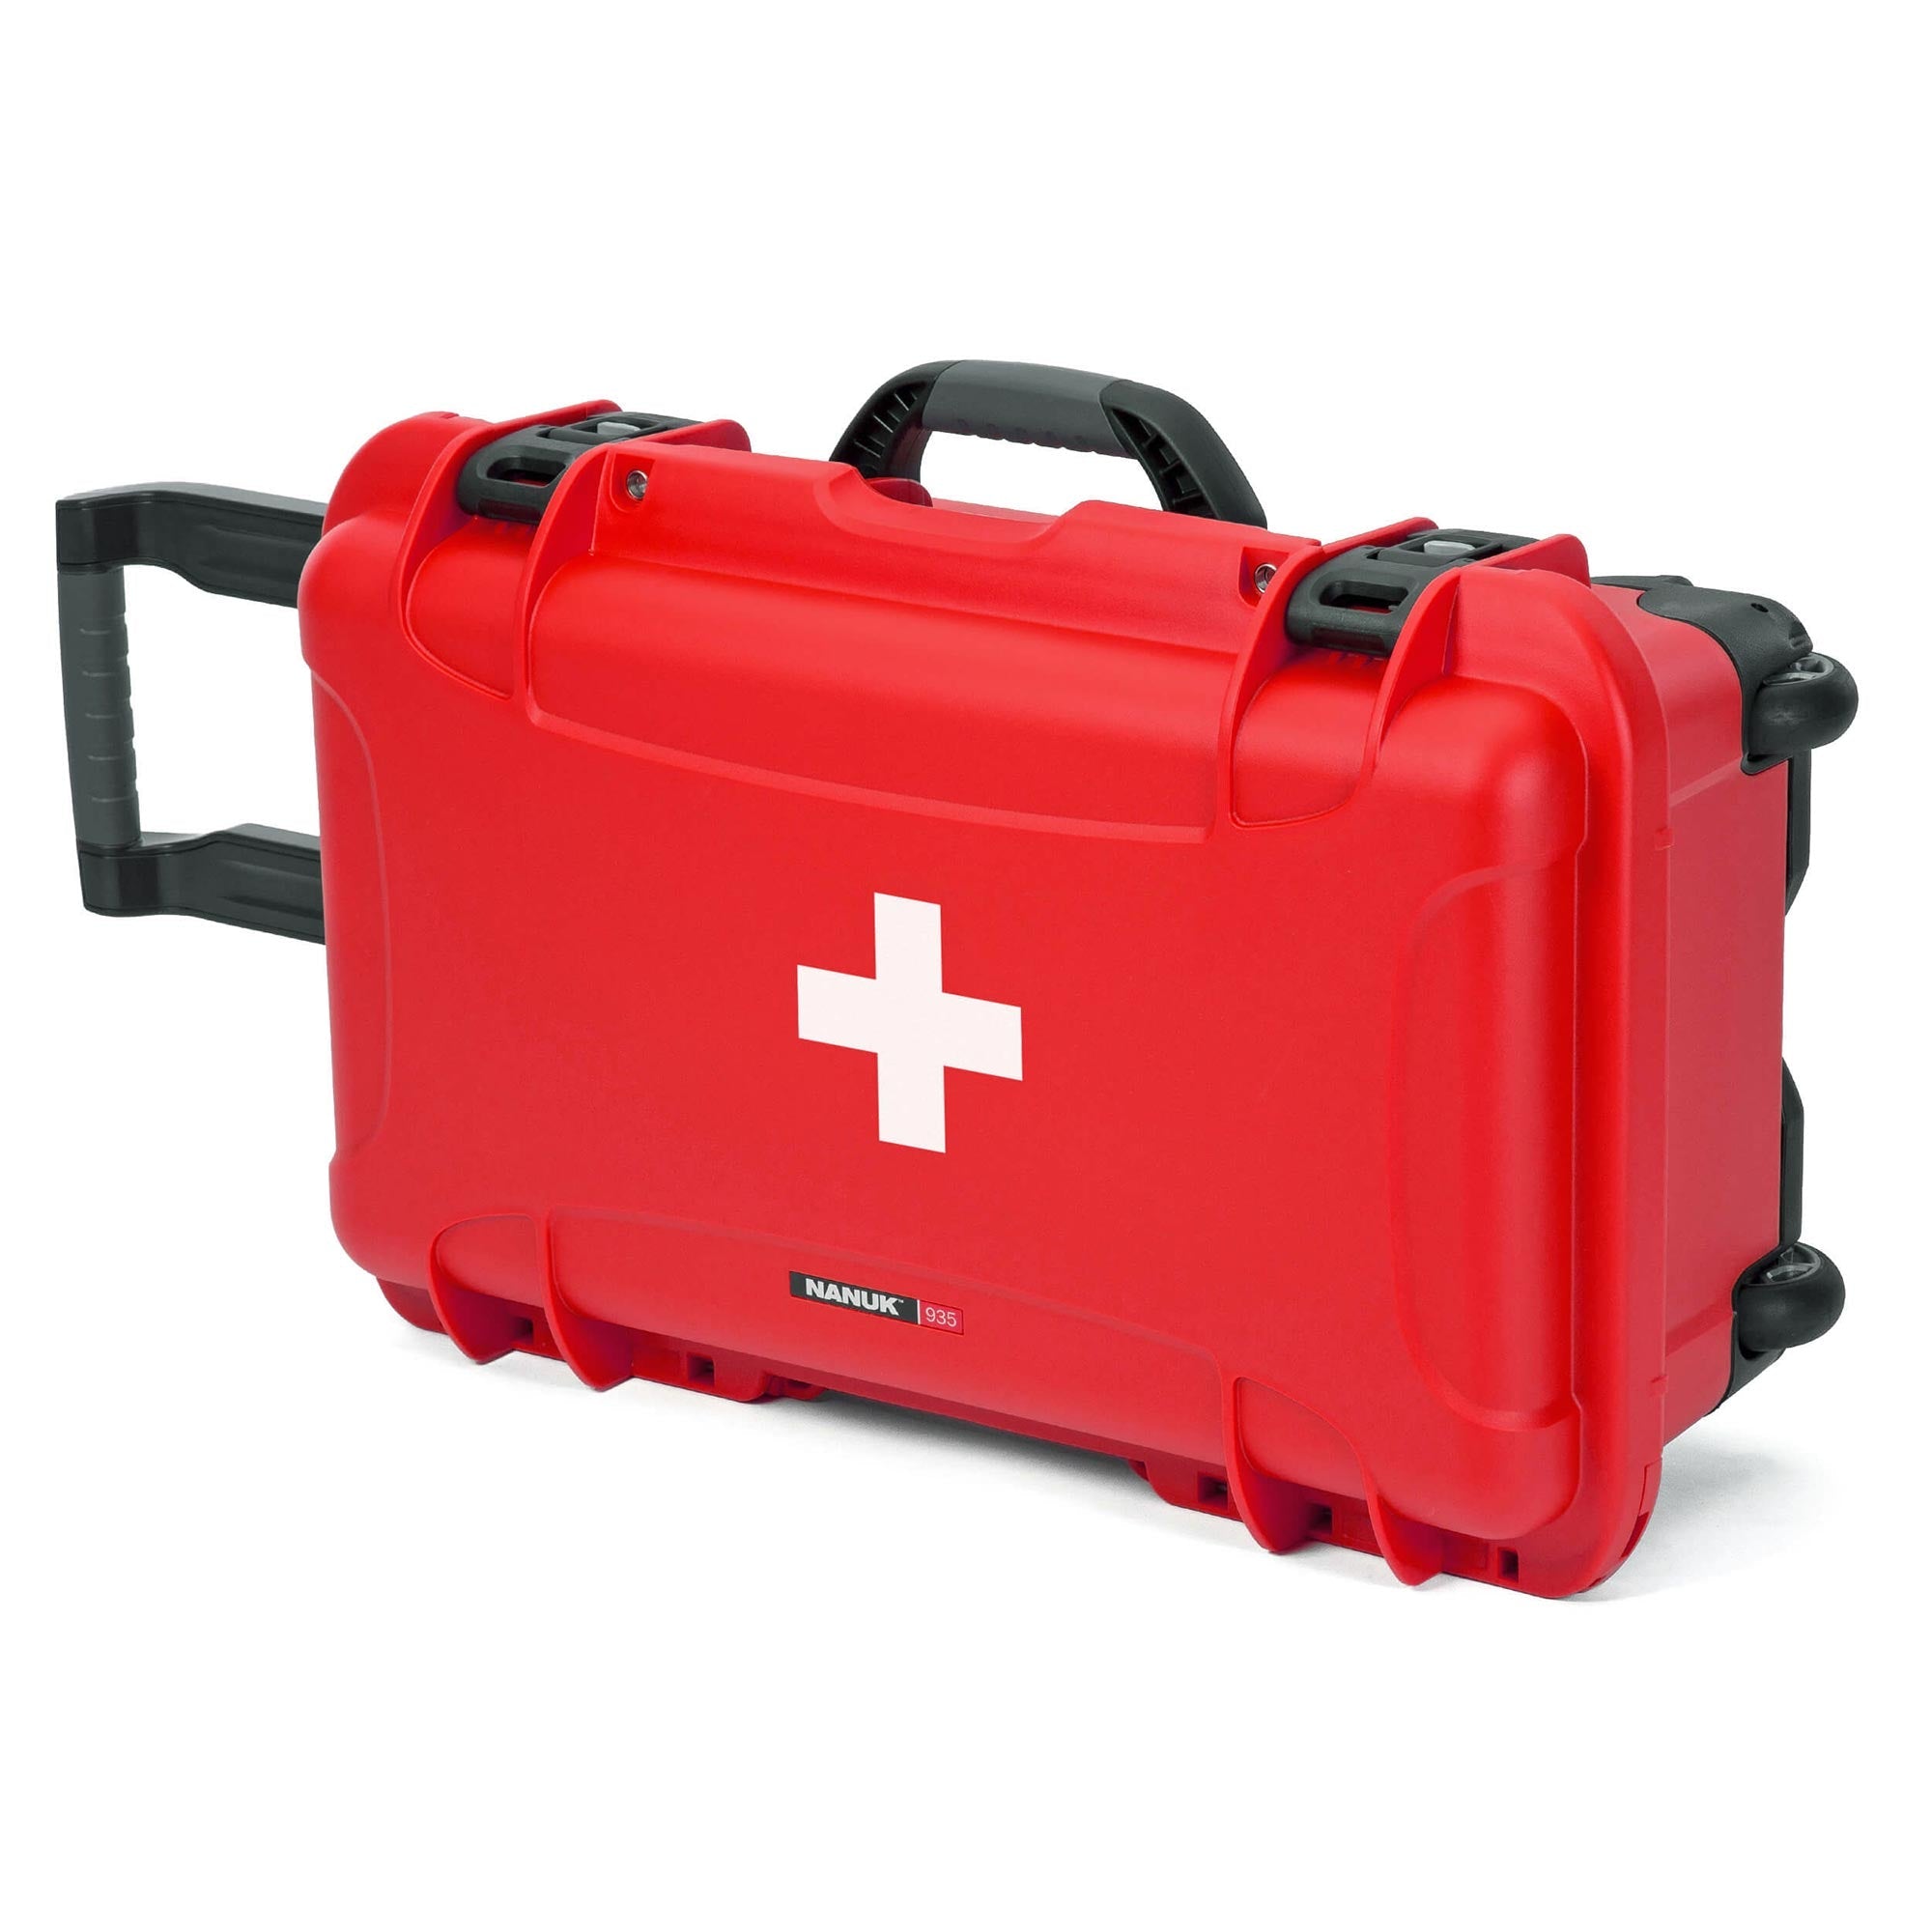 NANUK 904 Erste Hilfe valise  Official NANUK Protective valise Online  Store - Wasserdicht & Unverwüstlich Hart valise - NANUK Europa